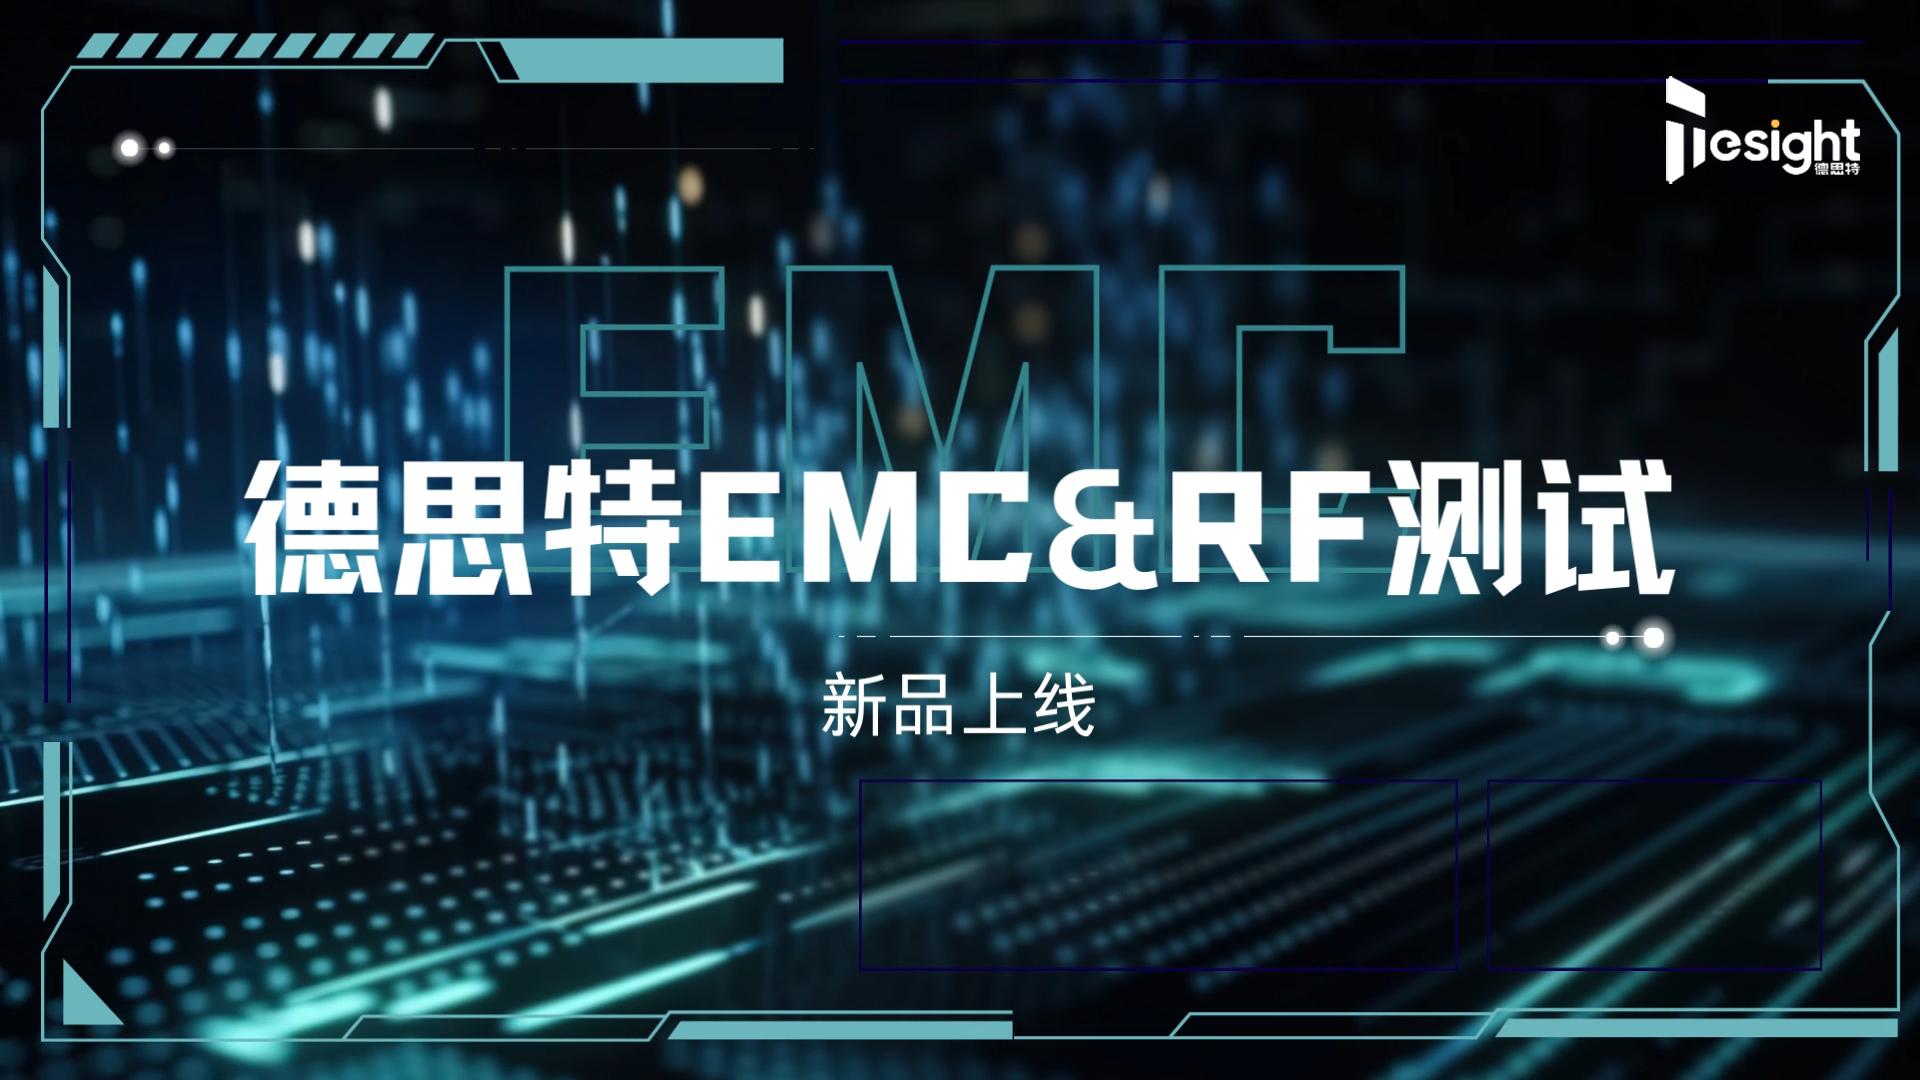 #EMC &#RF 測試系列方案#射頻 #射頻測試 #微波技術 #電磁兼容EMC #電磁兼容 #測試技術 